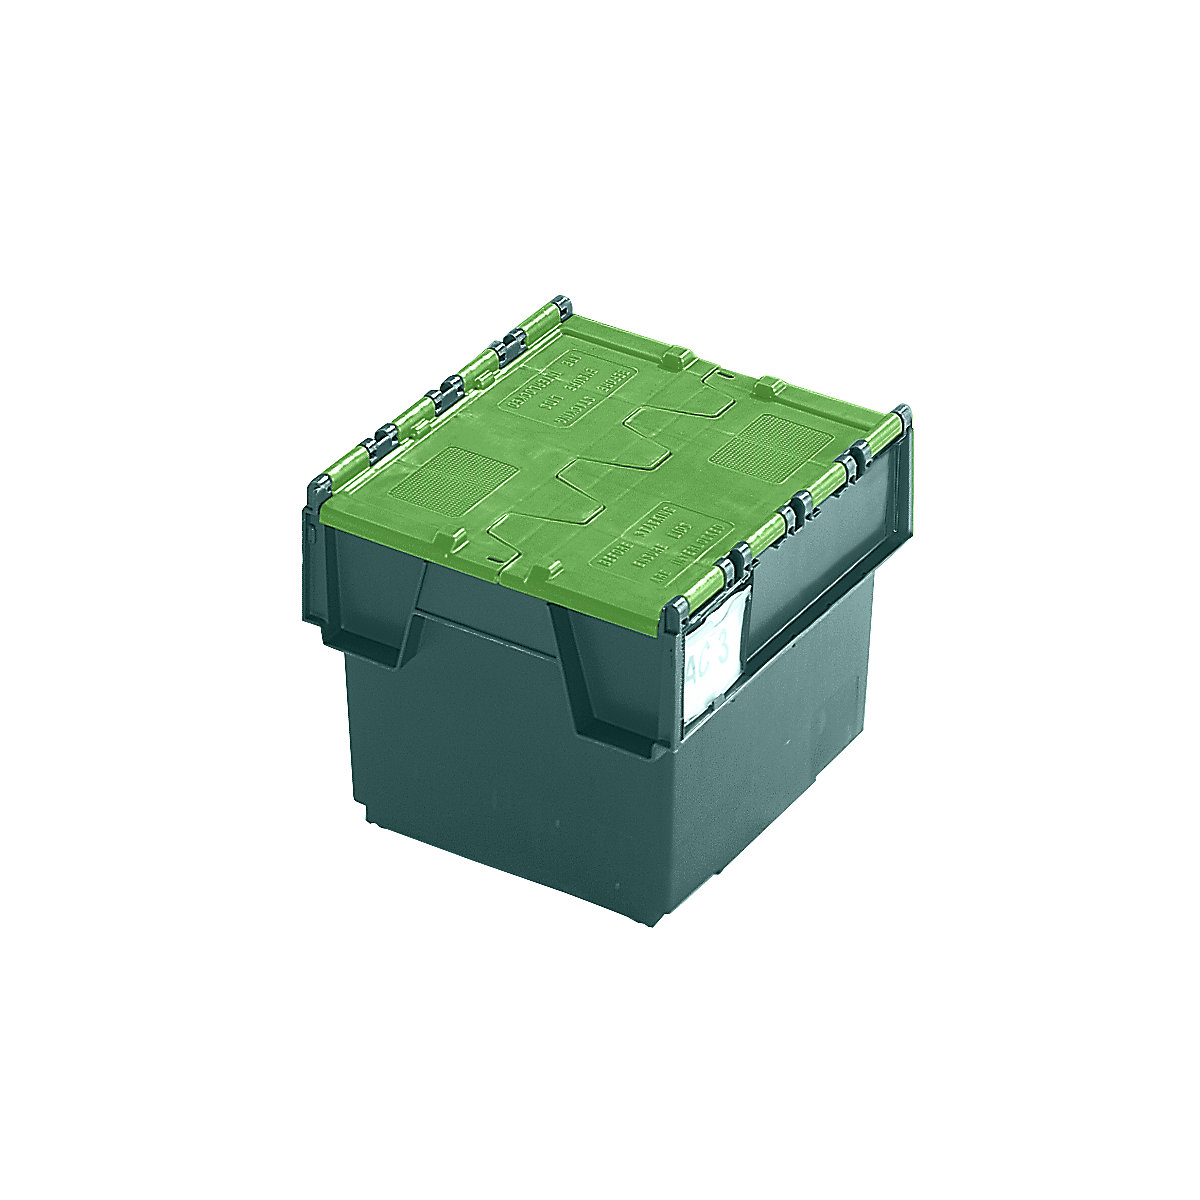 Pojemnik wielokrotnego użytku do ustawiania w stos ze składaną pokrywą, poj. 25 l, dł. x szer. x wys. 400 x 300 x 320 mm, zielony